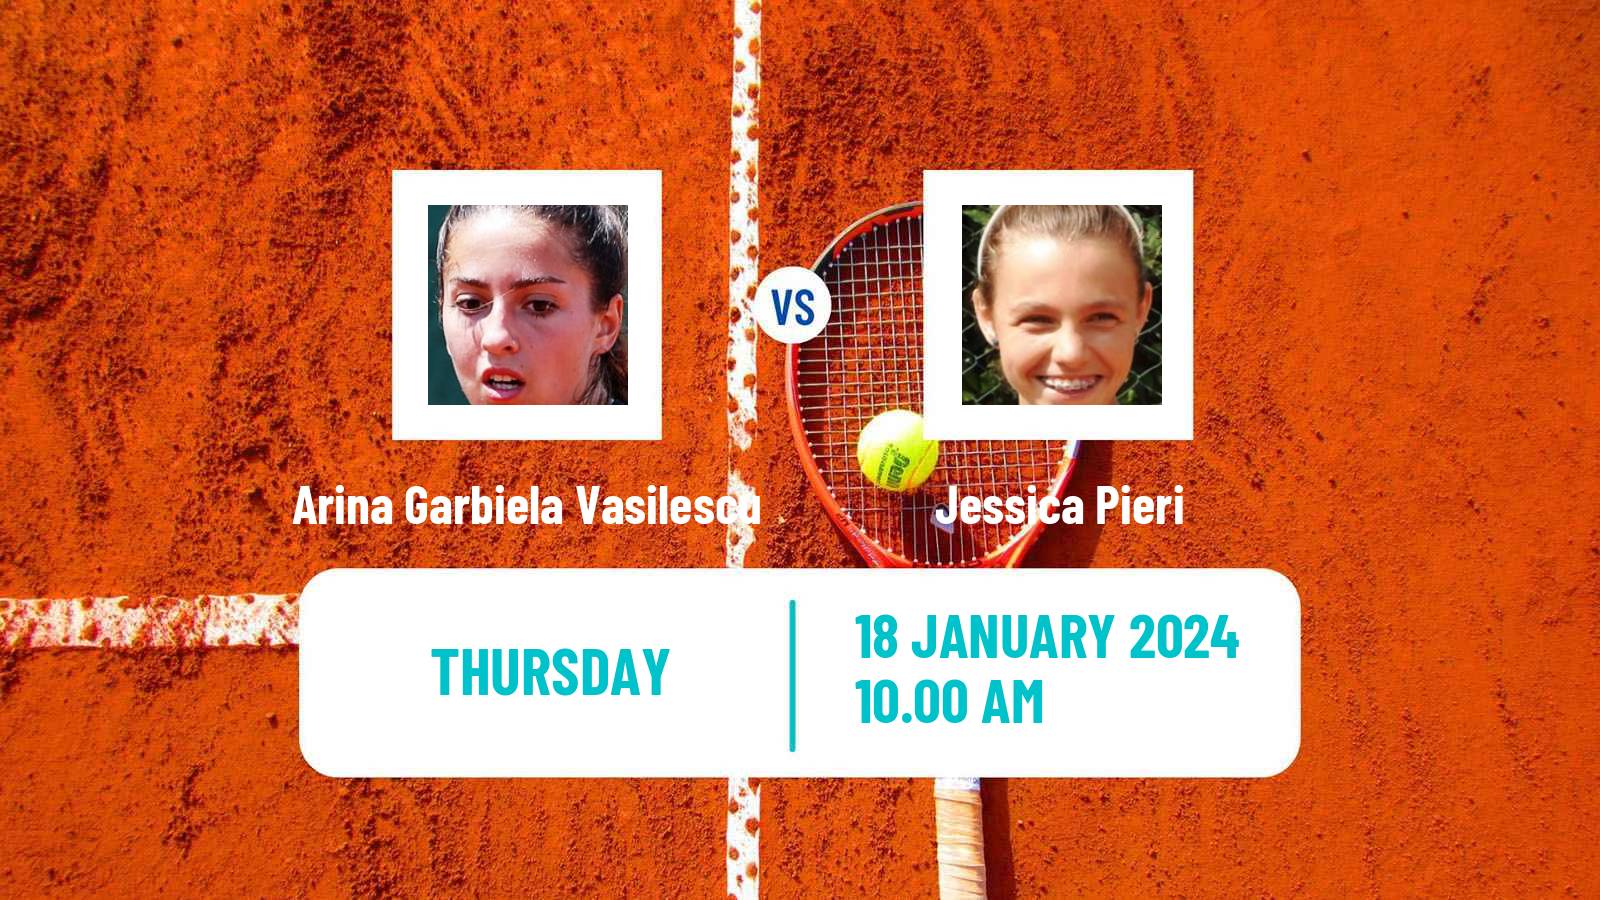 Tennis ITF W35 Naples Fl 2 Women Arina Garbiela Vasilescu - Jessica Pieri